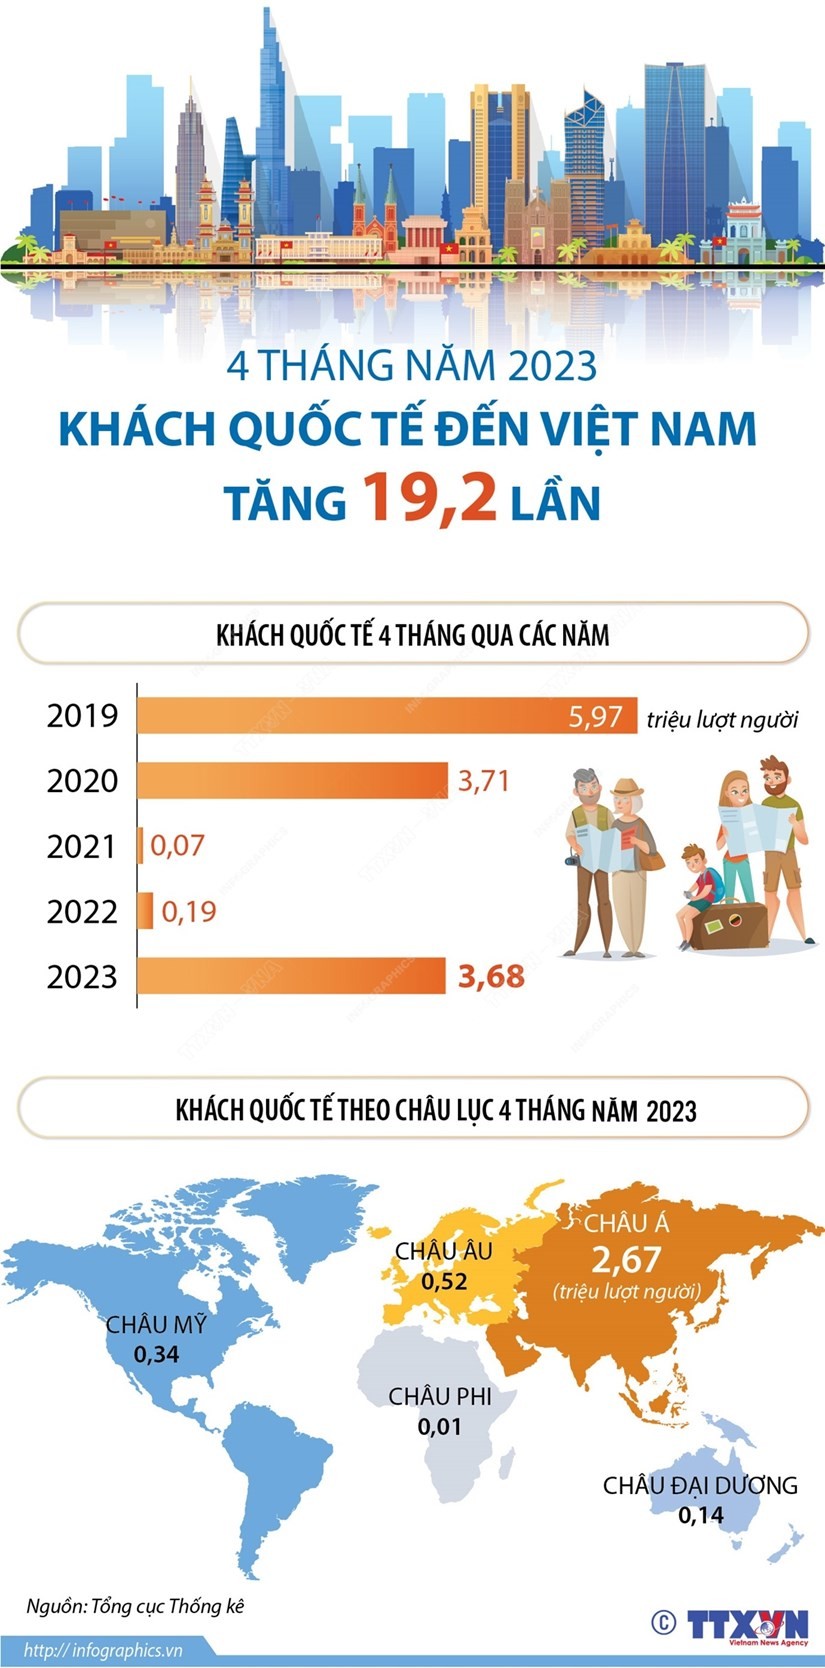 Khách quốc tế đến Việt Nam tăng 19,2 lần trong bốn tháng năm 2023